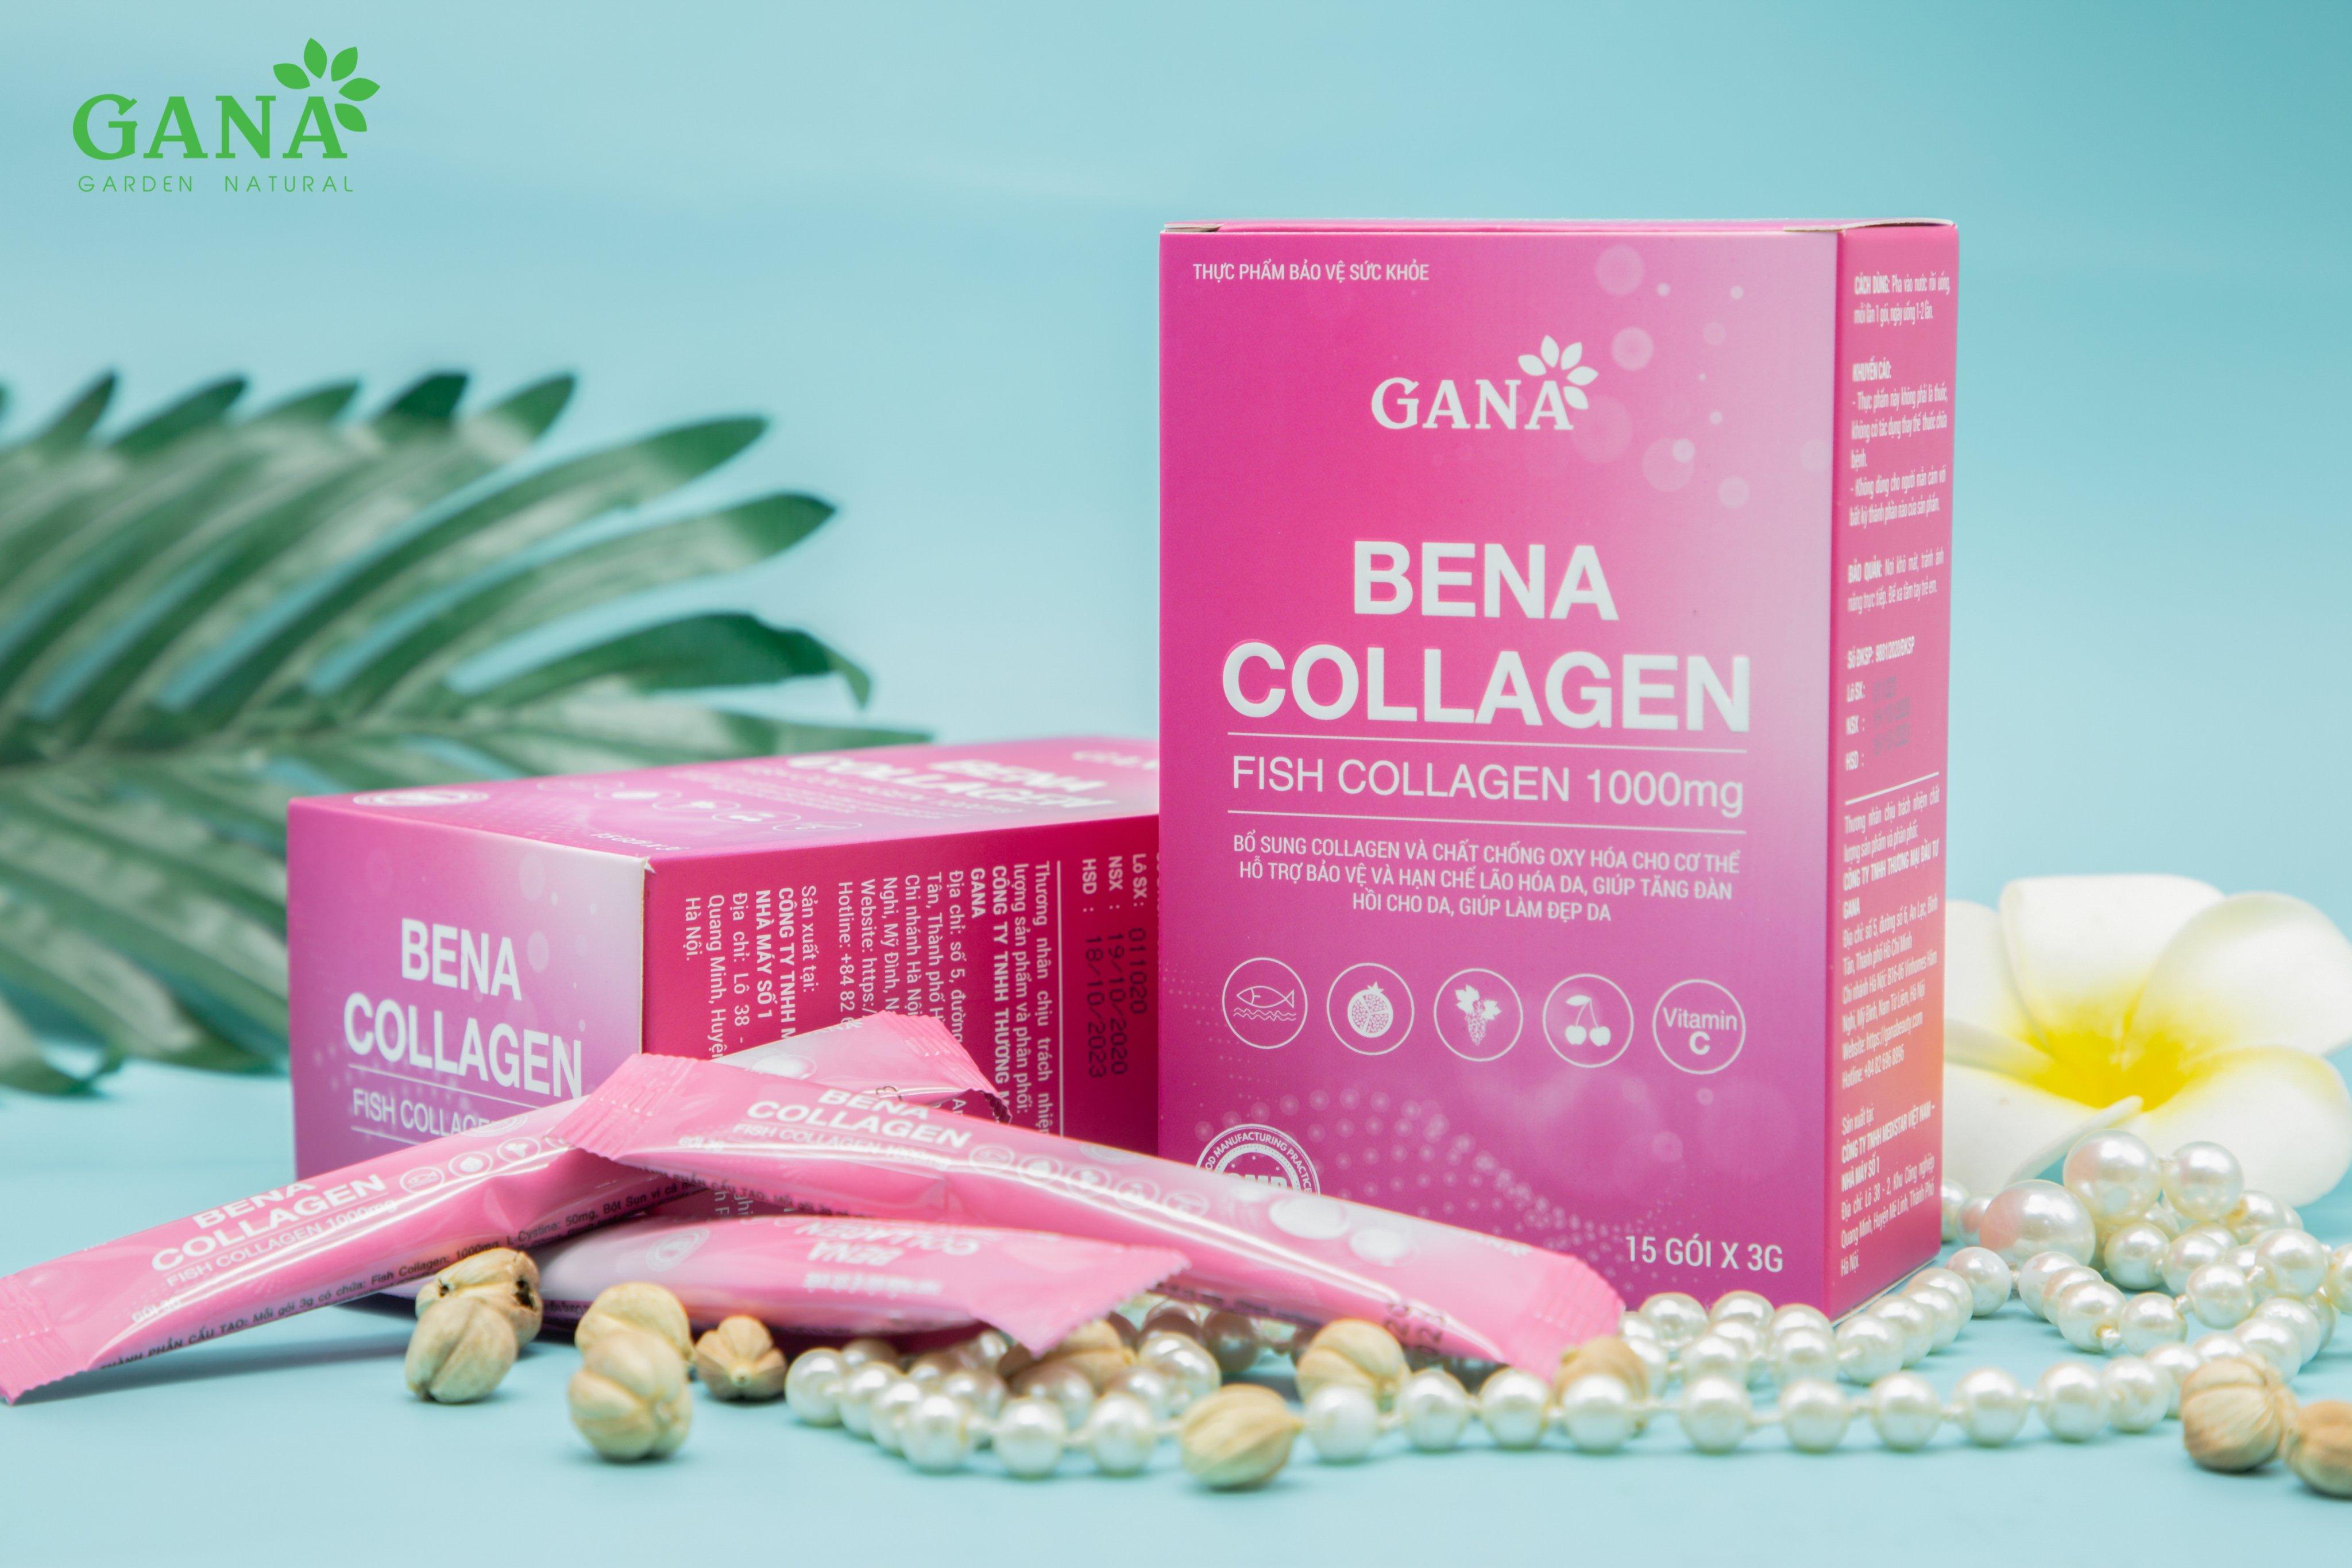 Ưu điểm của Bena Collagen so với các sản phẩm collagen khác là gì?
